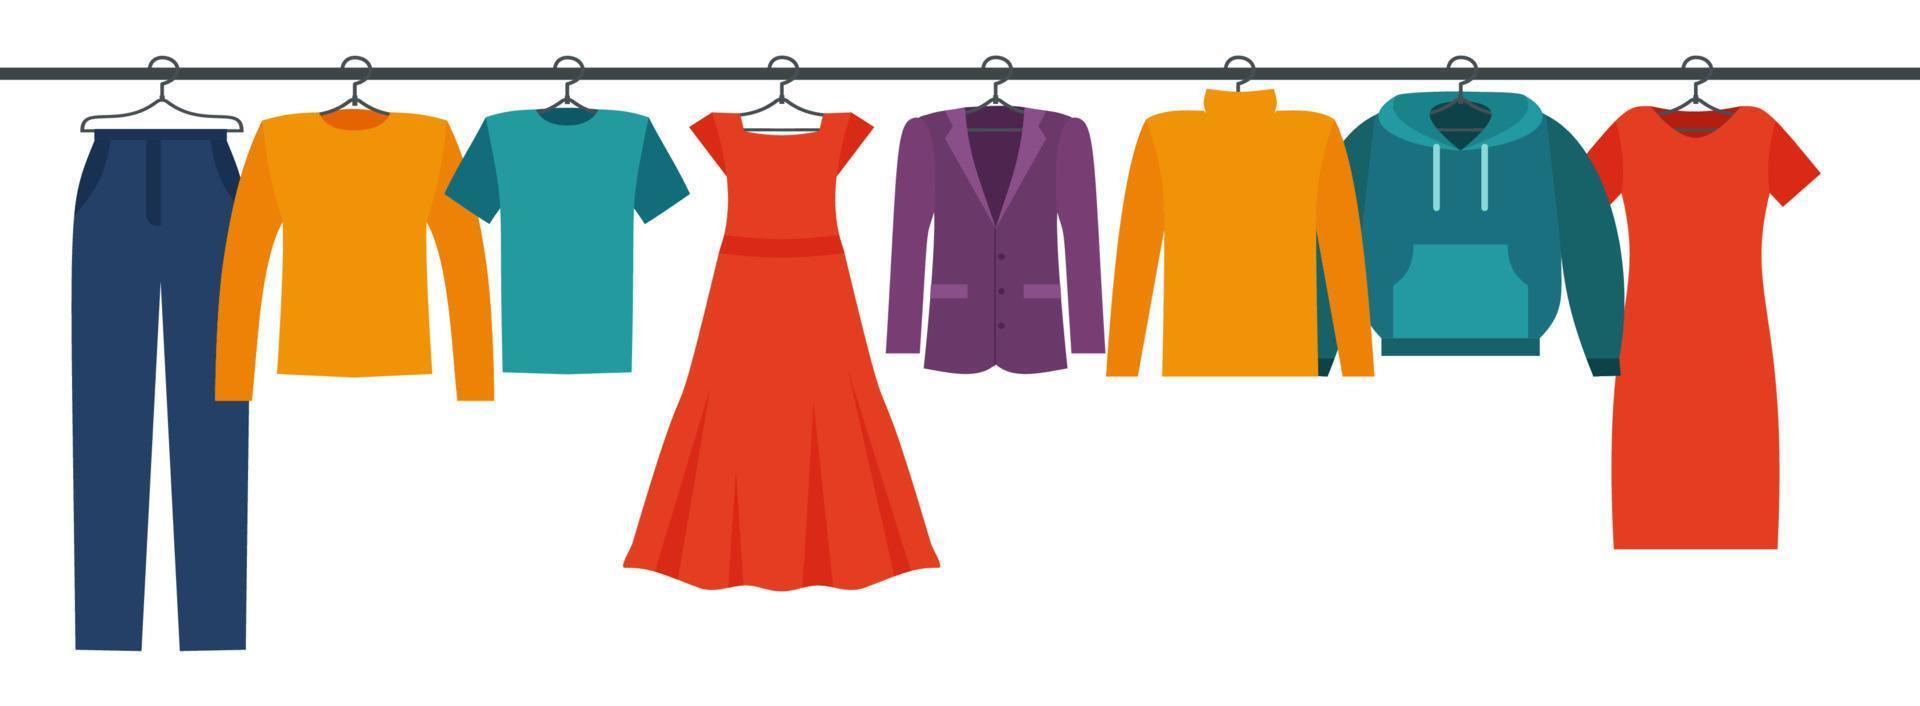 vrouw en Mens kleren en accessoires verzameling - mode garderobe - vector kleur illustratie